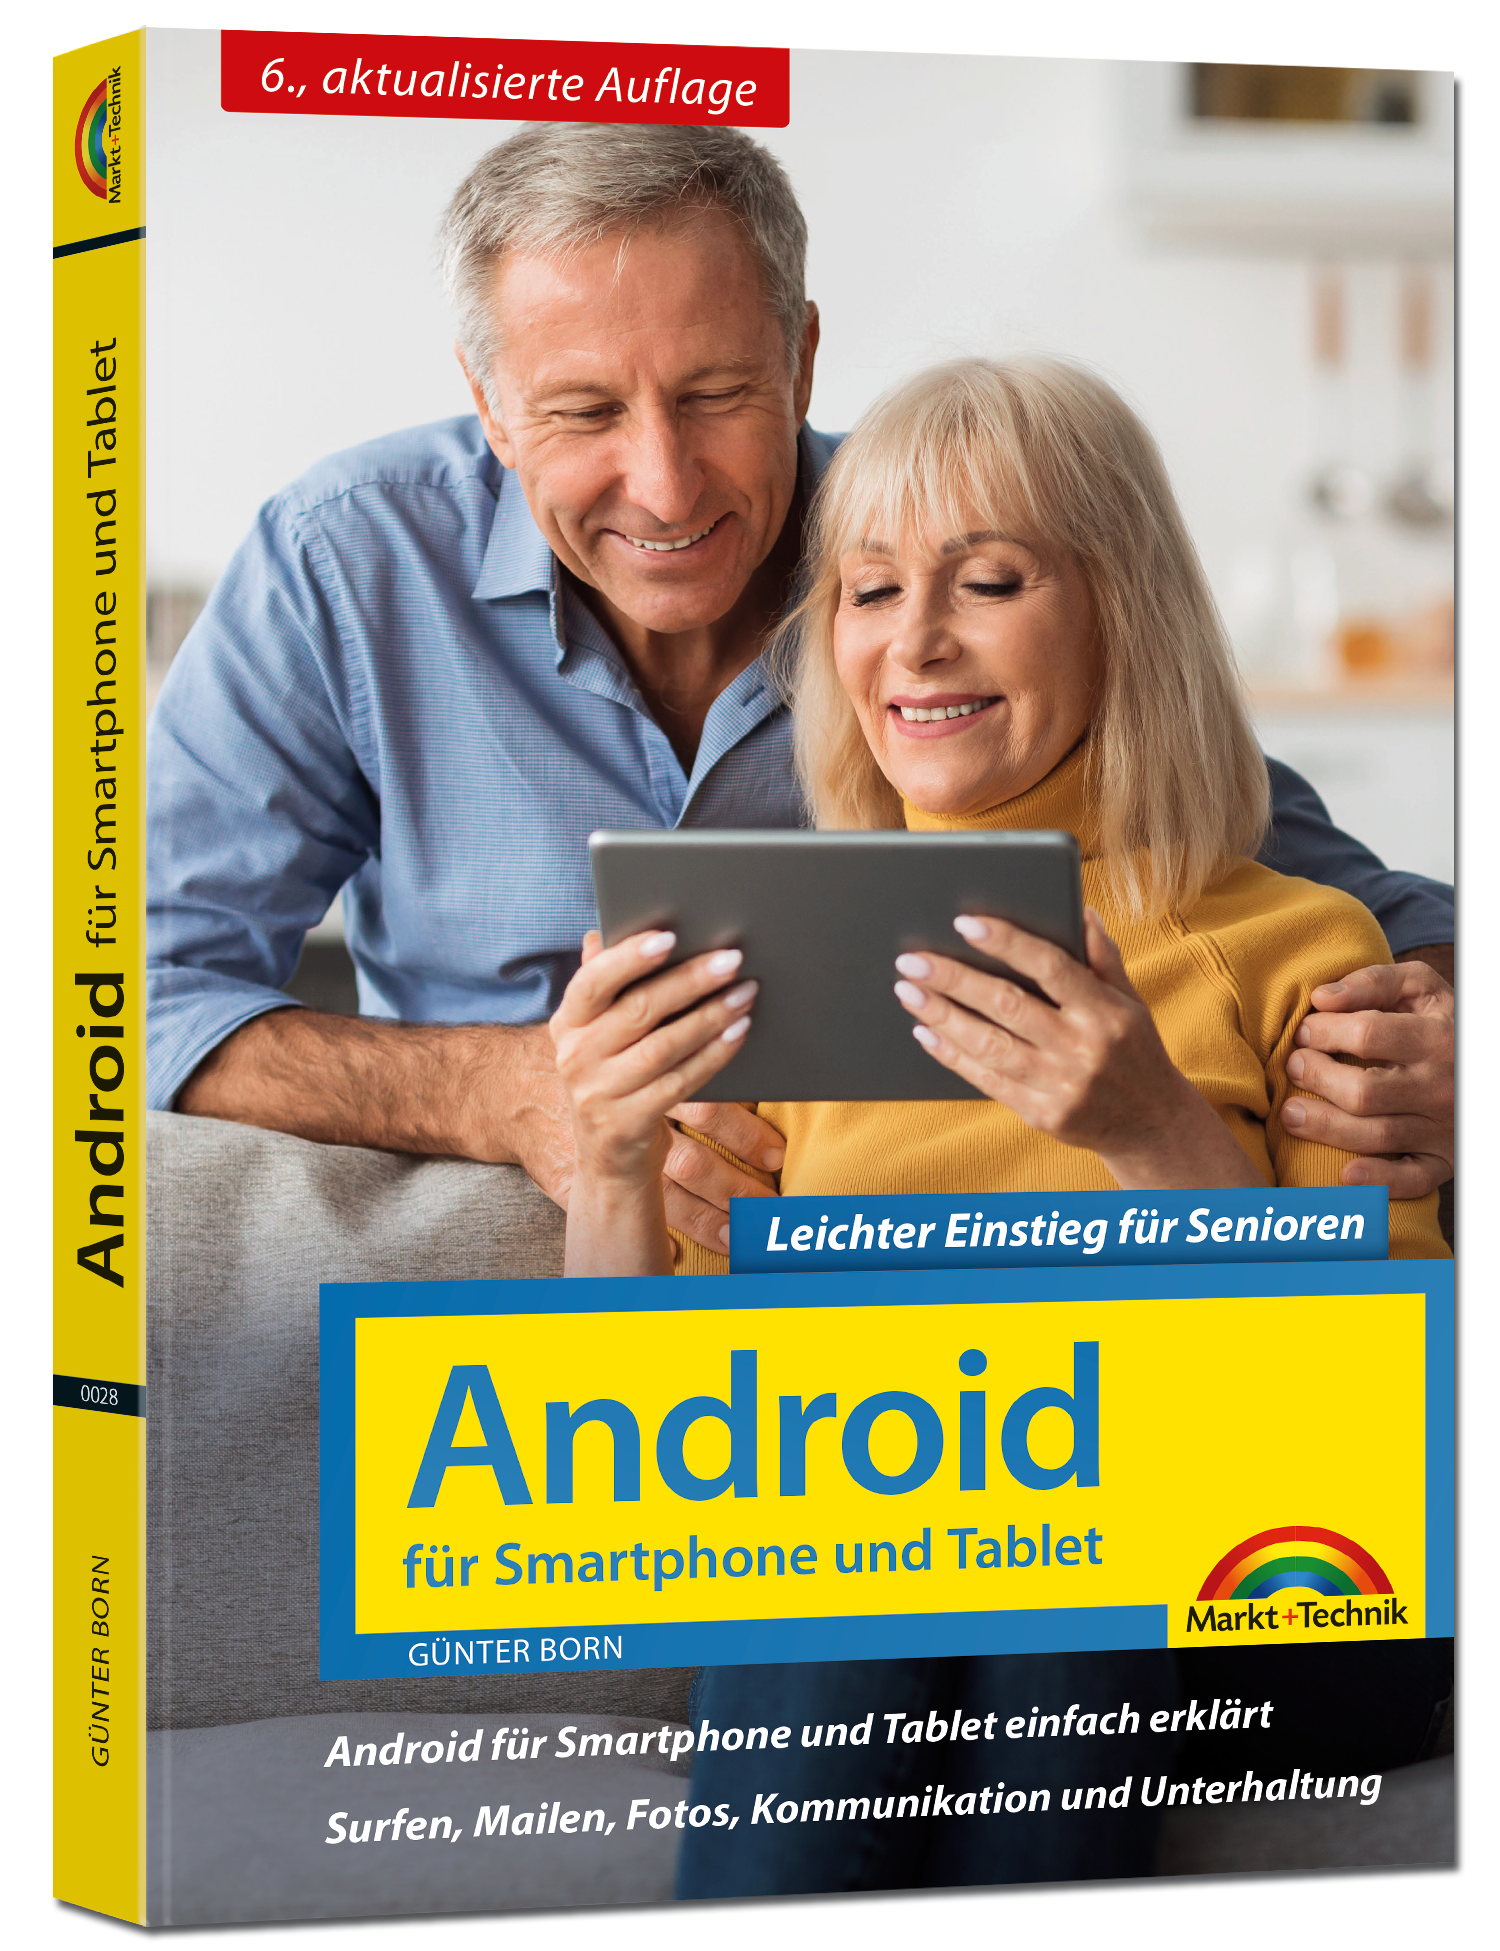 Android für Smartphone und Tablet – Leichter Einstieg für Senioren (6. Auflage)